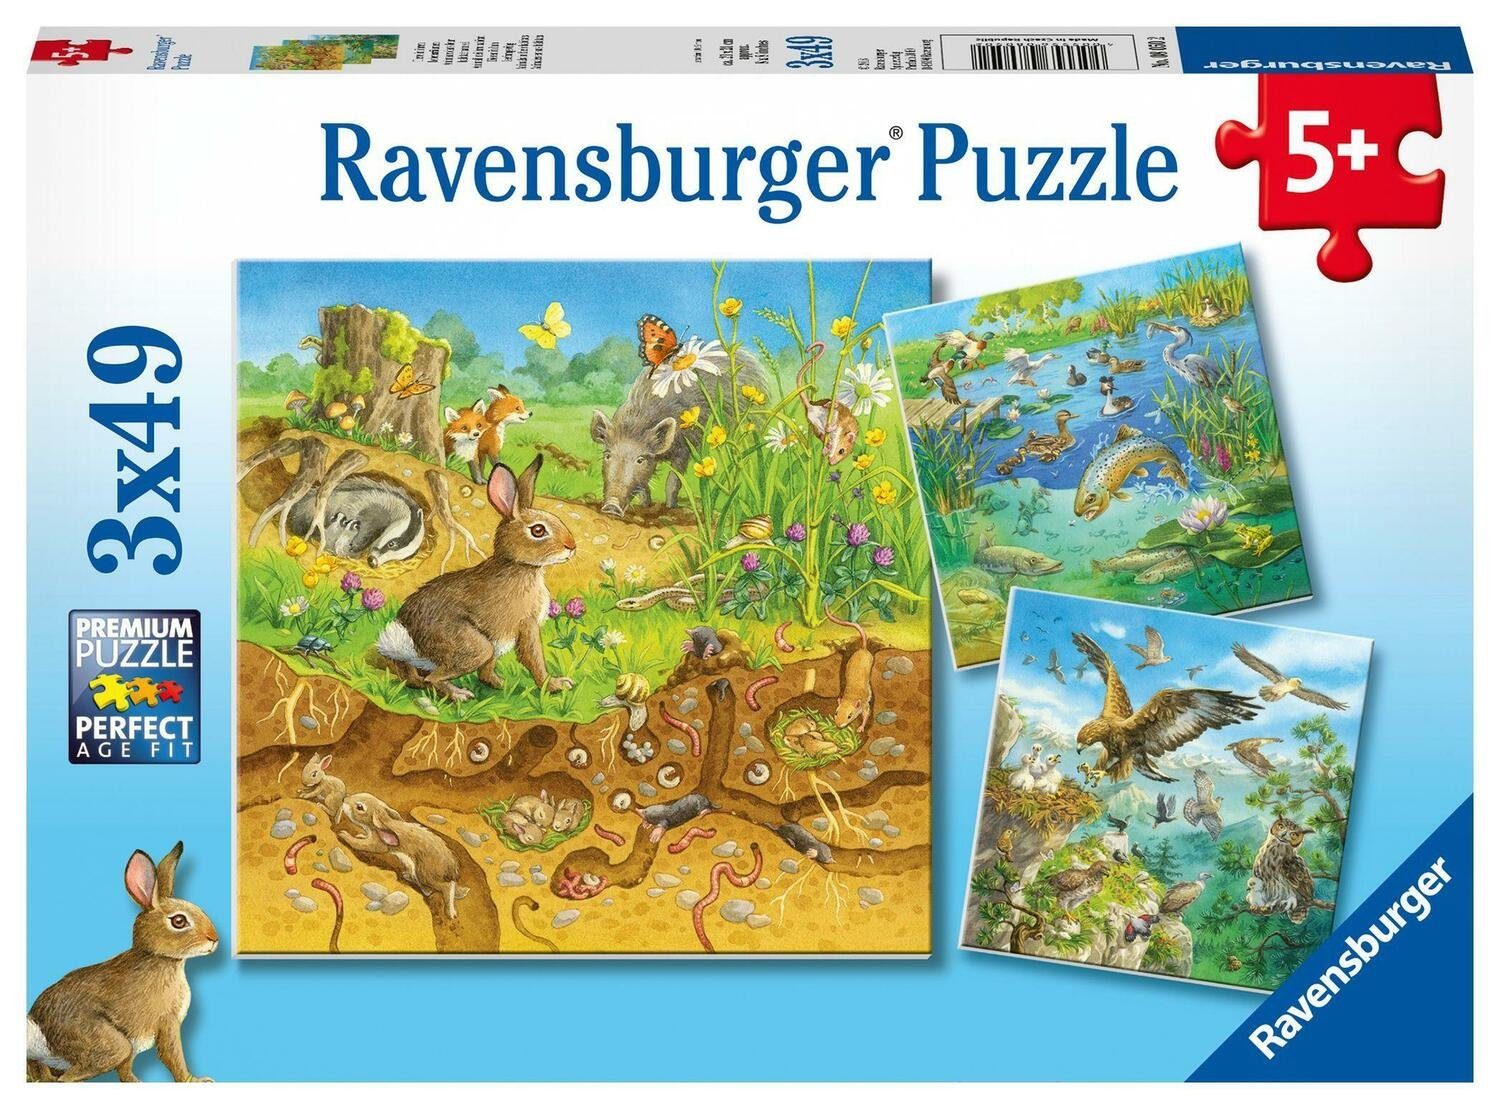 Ravensburger Puzzle Tiere in ihren Lebensräumen - Puzzle mit 49 Teilen, 49 Puzzleteile